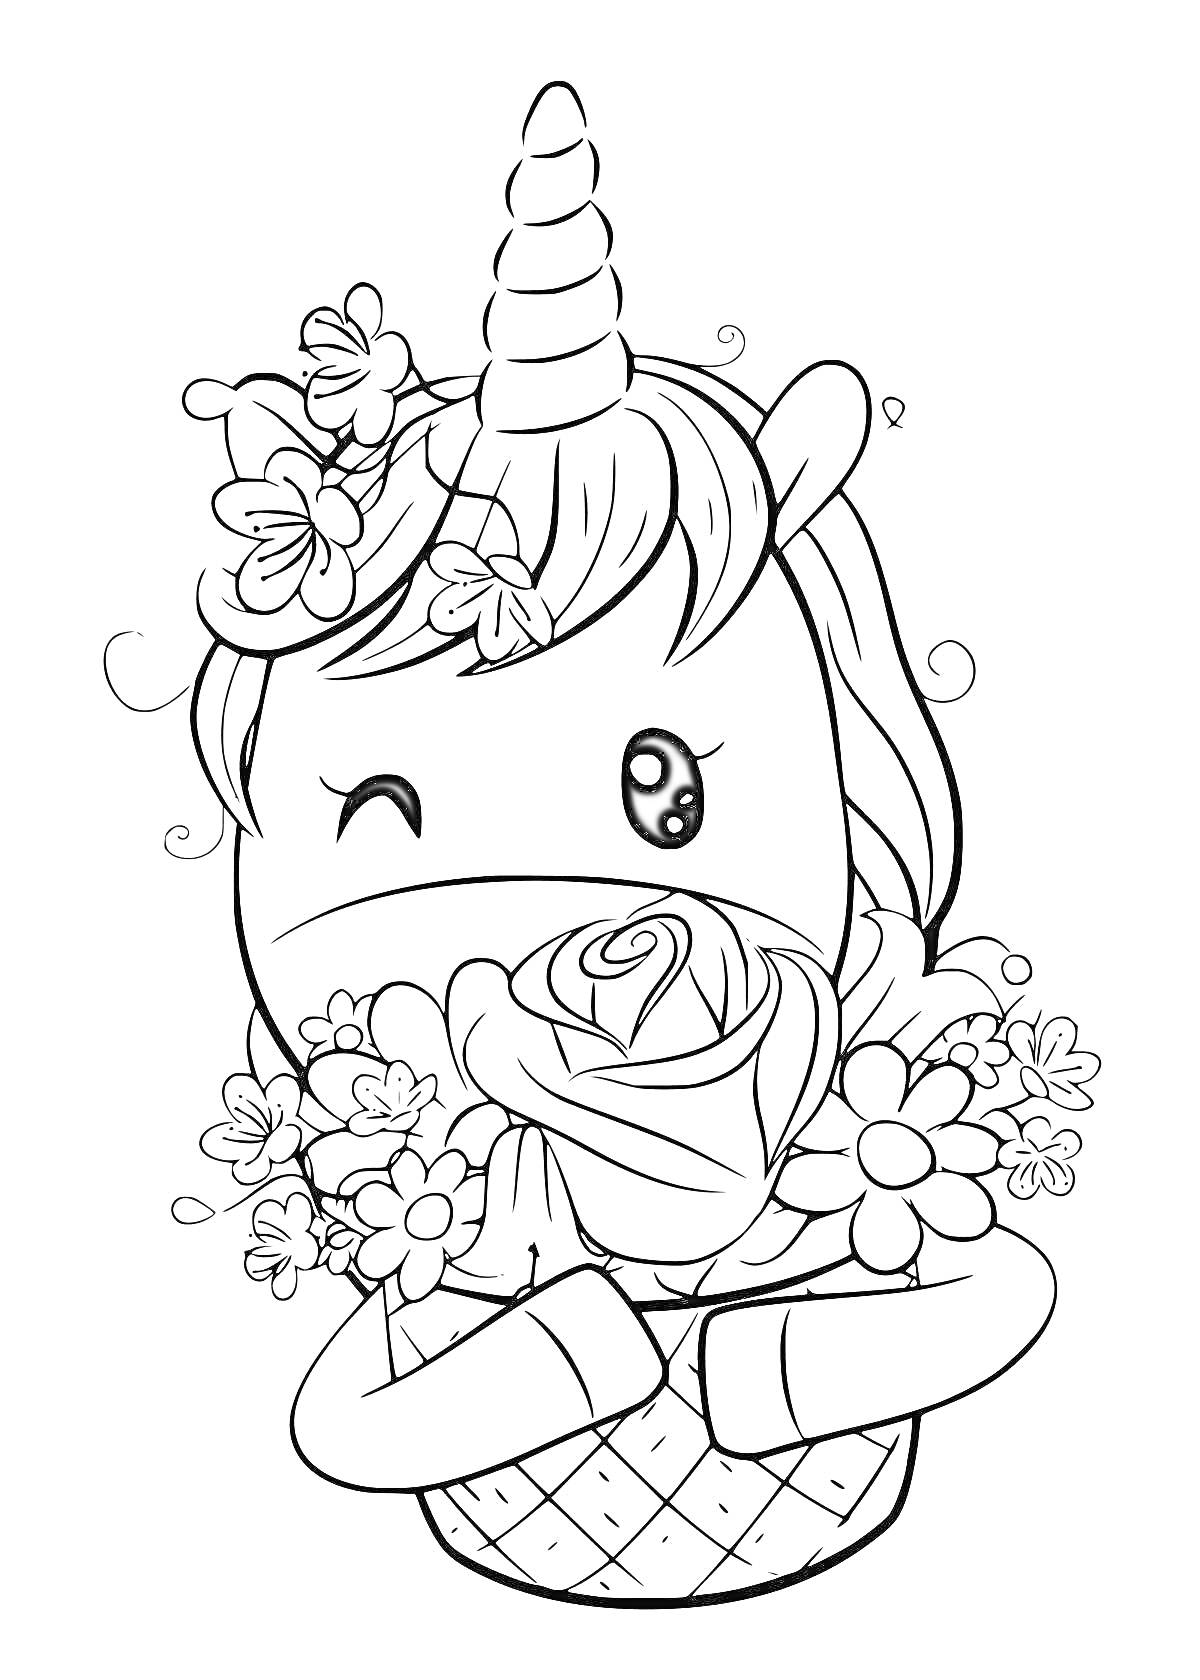 Раскраска Единорог с цветами